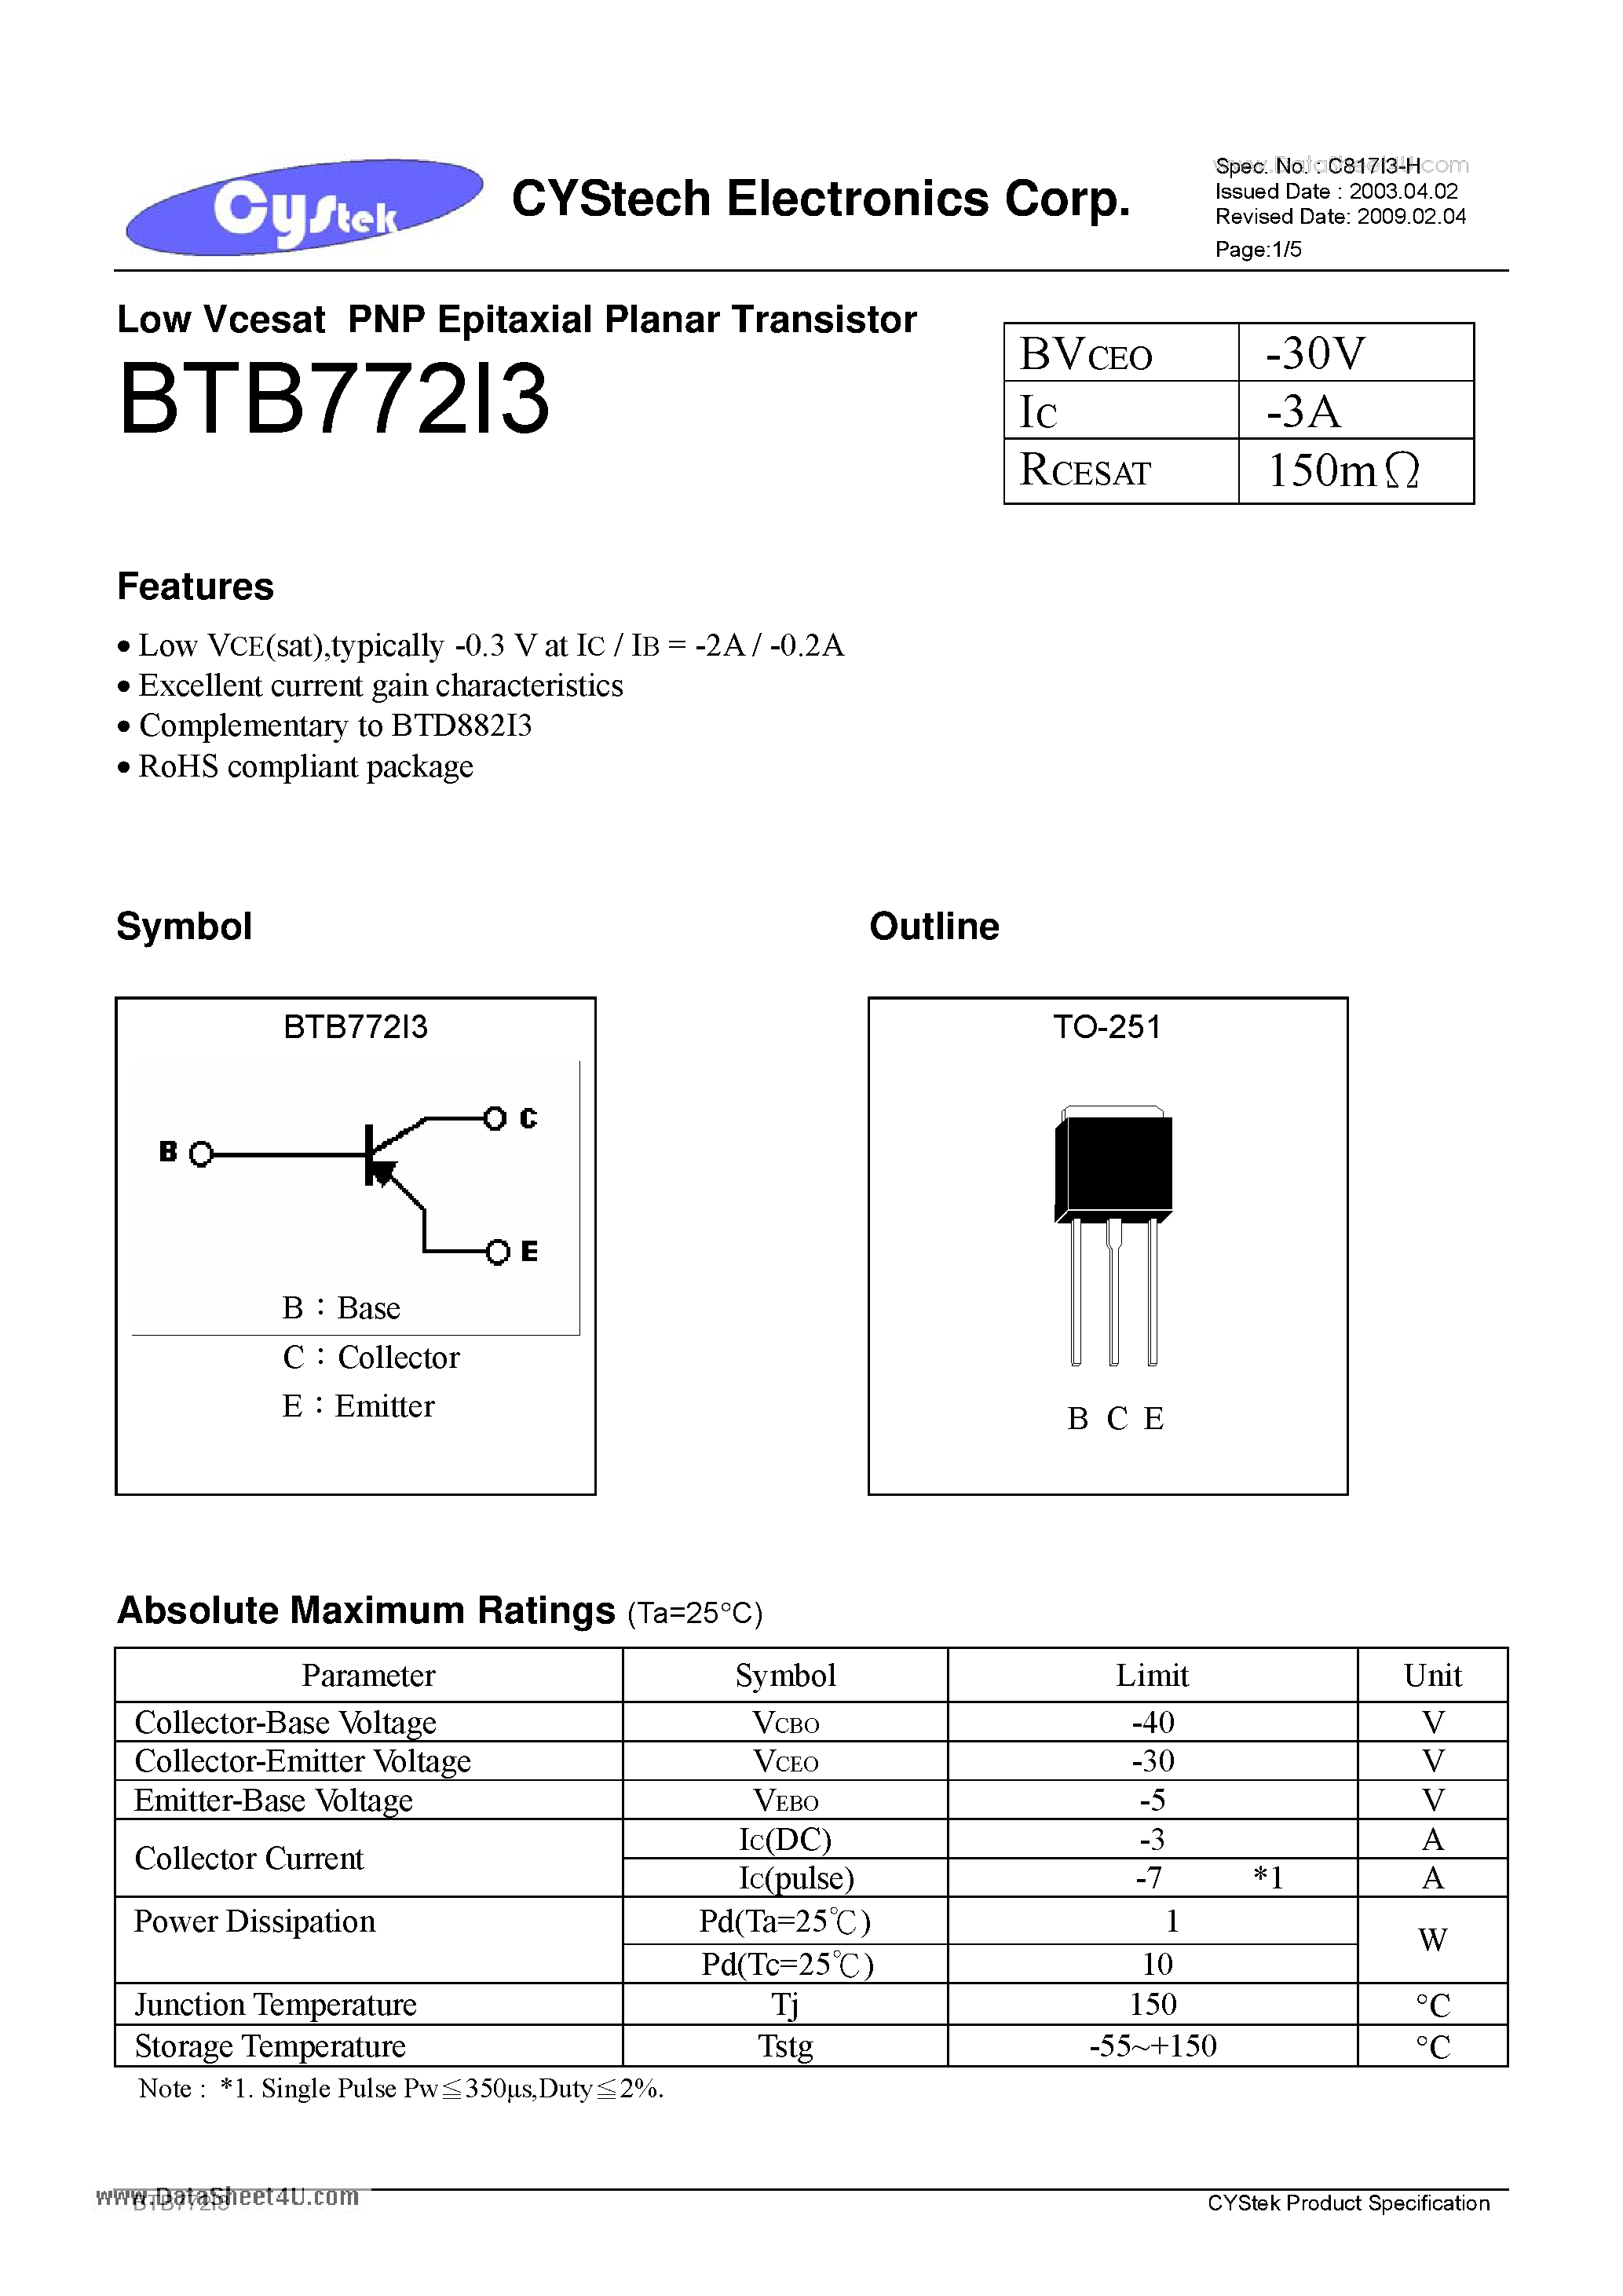 Даташит BTB772I3 - Low Vcesat PNP Epitaxial Planar Transistor страница 1